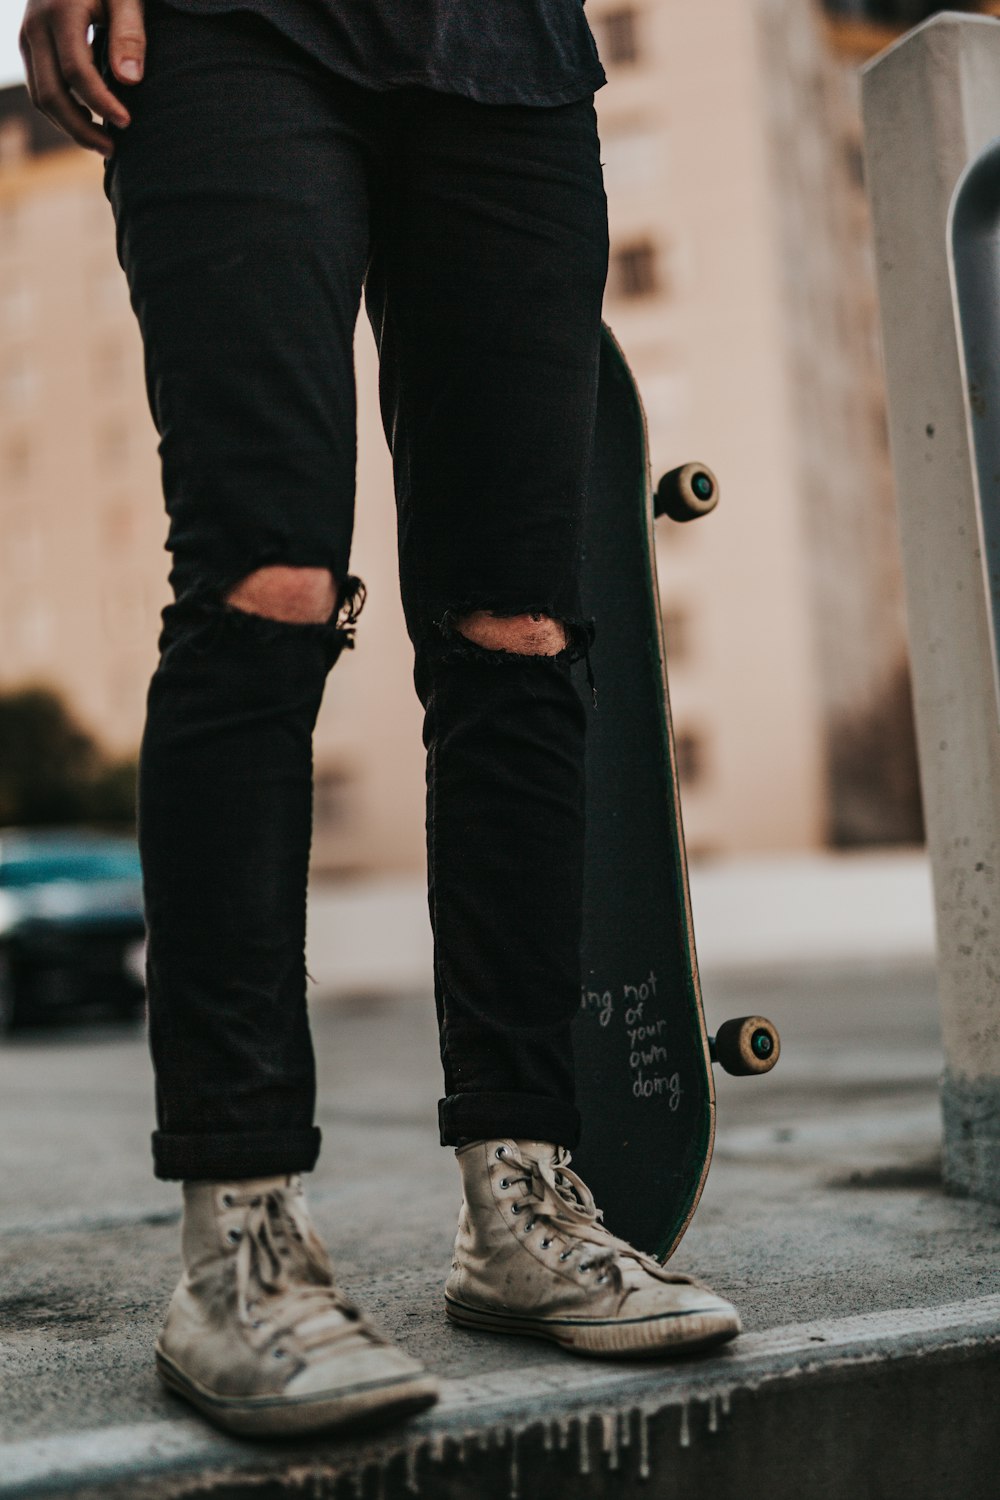 Persona che indossa pantaloni di jeans neri mentre tiene lo skateboard